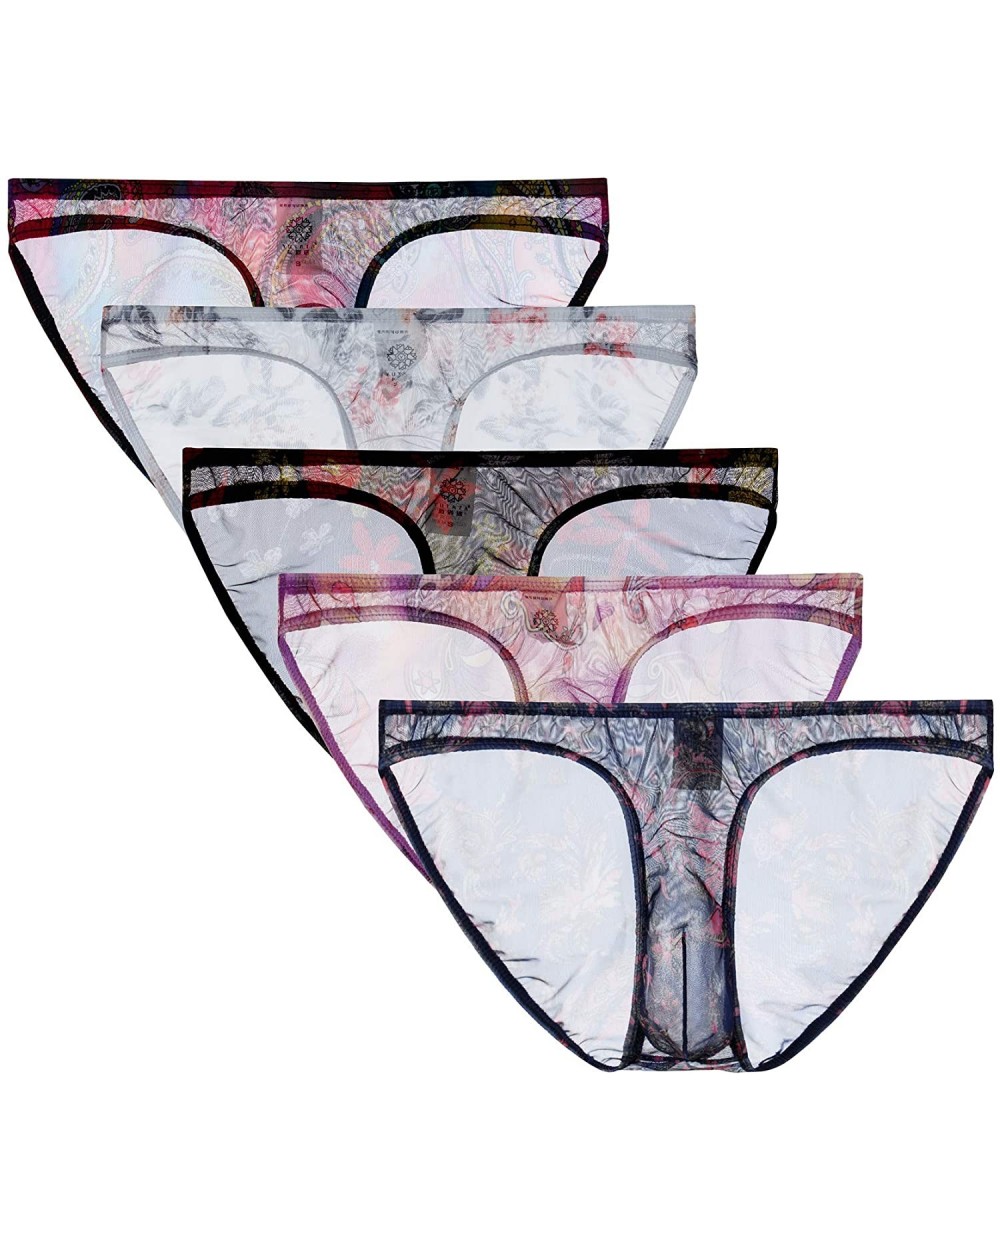 Mens Sexy Underwear Breathable Sexy Mesh See Through Bikini Briefs - 5-pack - CU198DHA7YA $31.89 G-Strings & Thongs